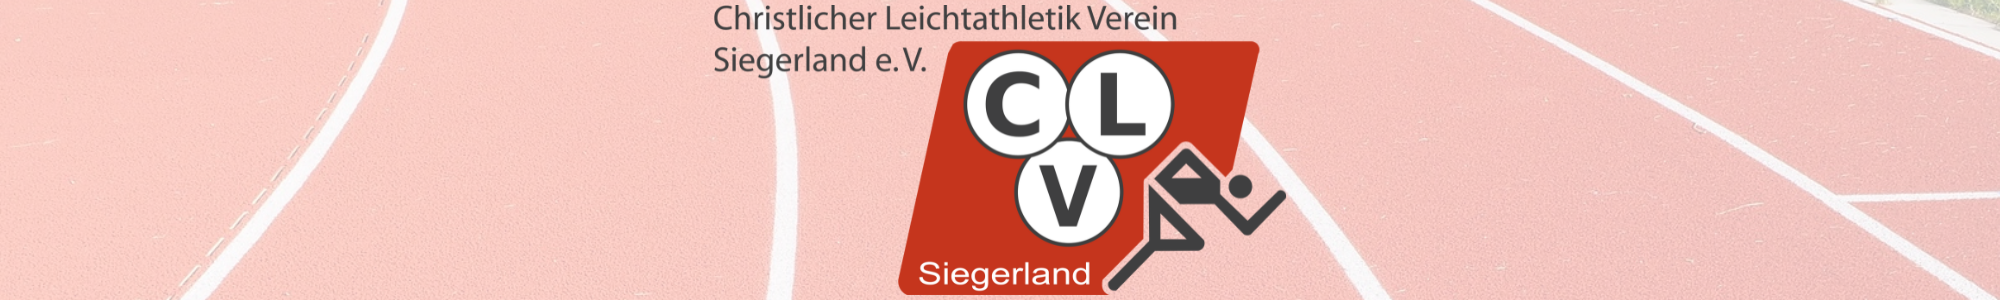 CLV-Siegerland